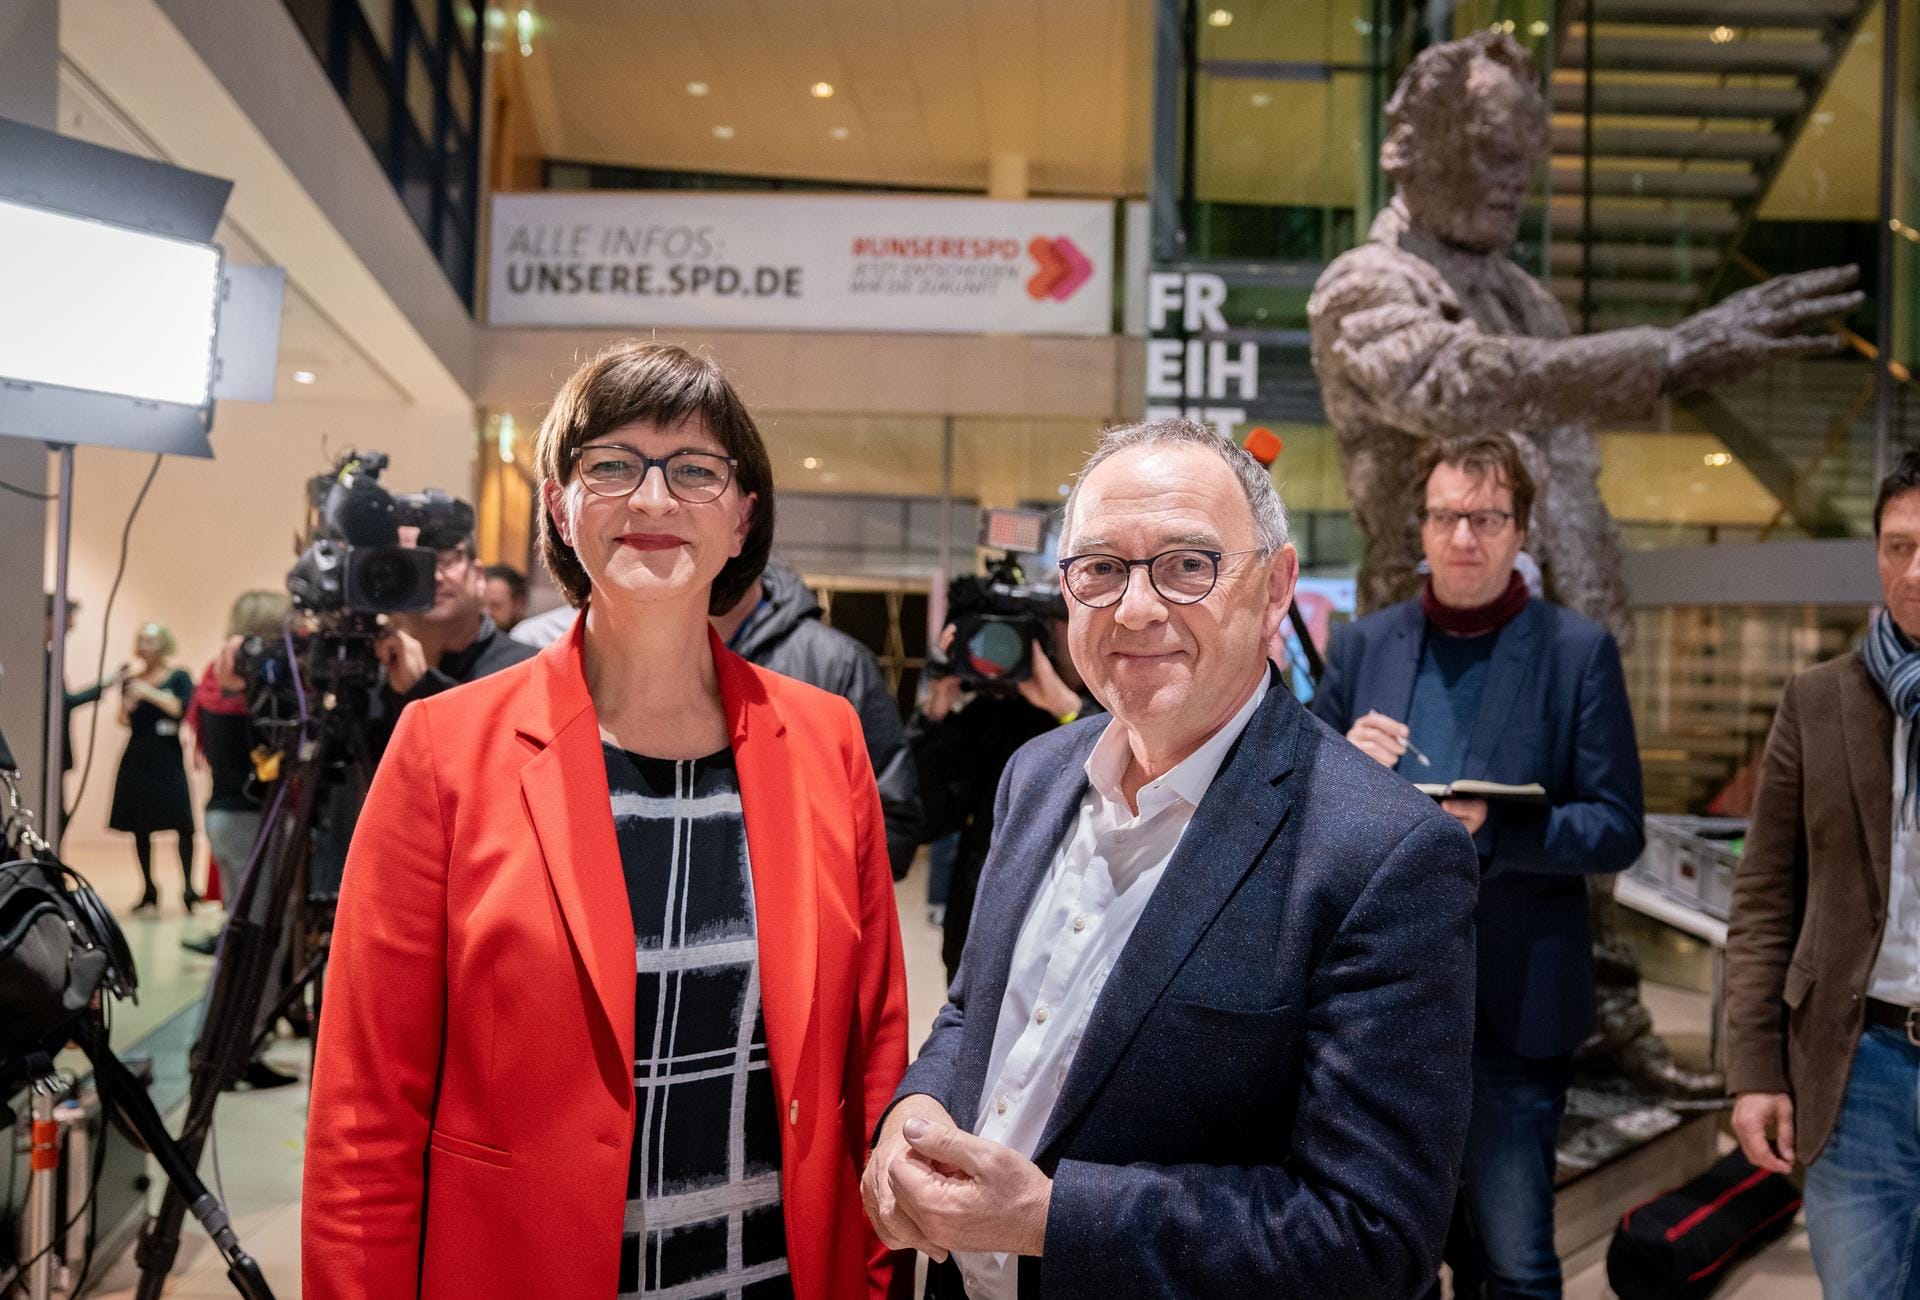 Die SPD-Mitglieder wollen Saskia Esken und Norbert Walter-Borjans als neue Vorsitzende haben. Für Vizekanzler Olaf Scholz und Klara Geywitz reichte es nicht.